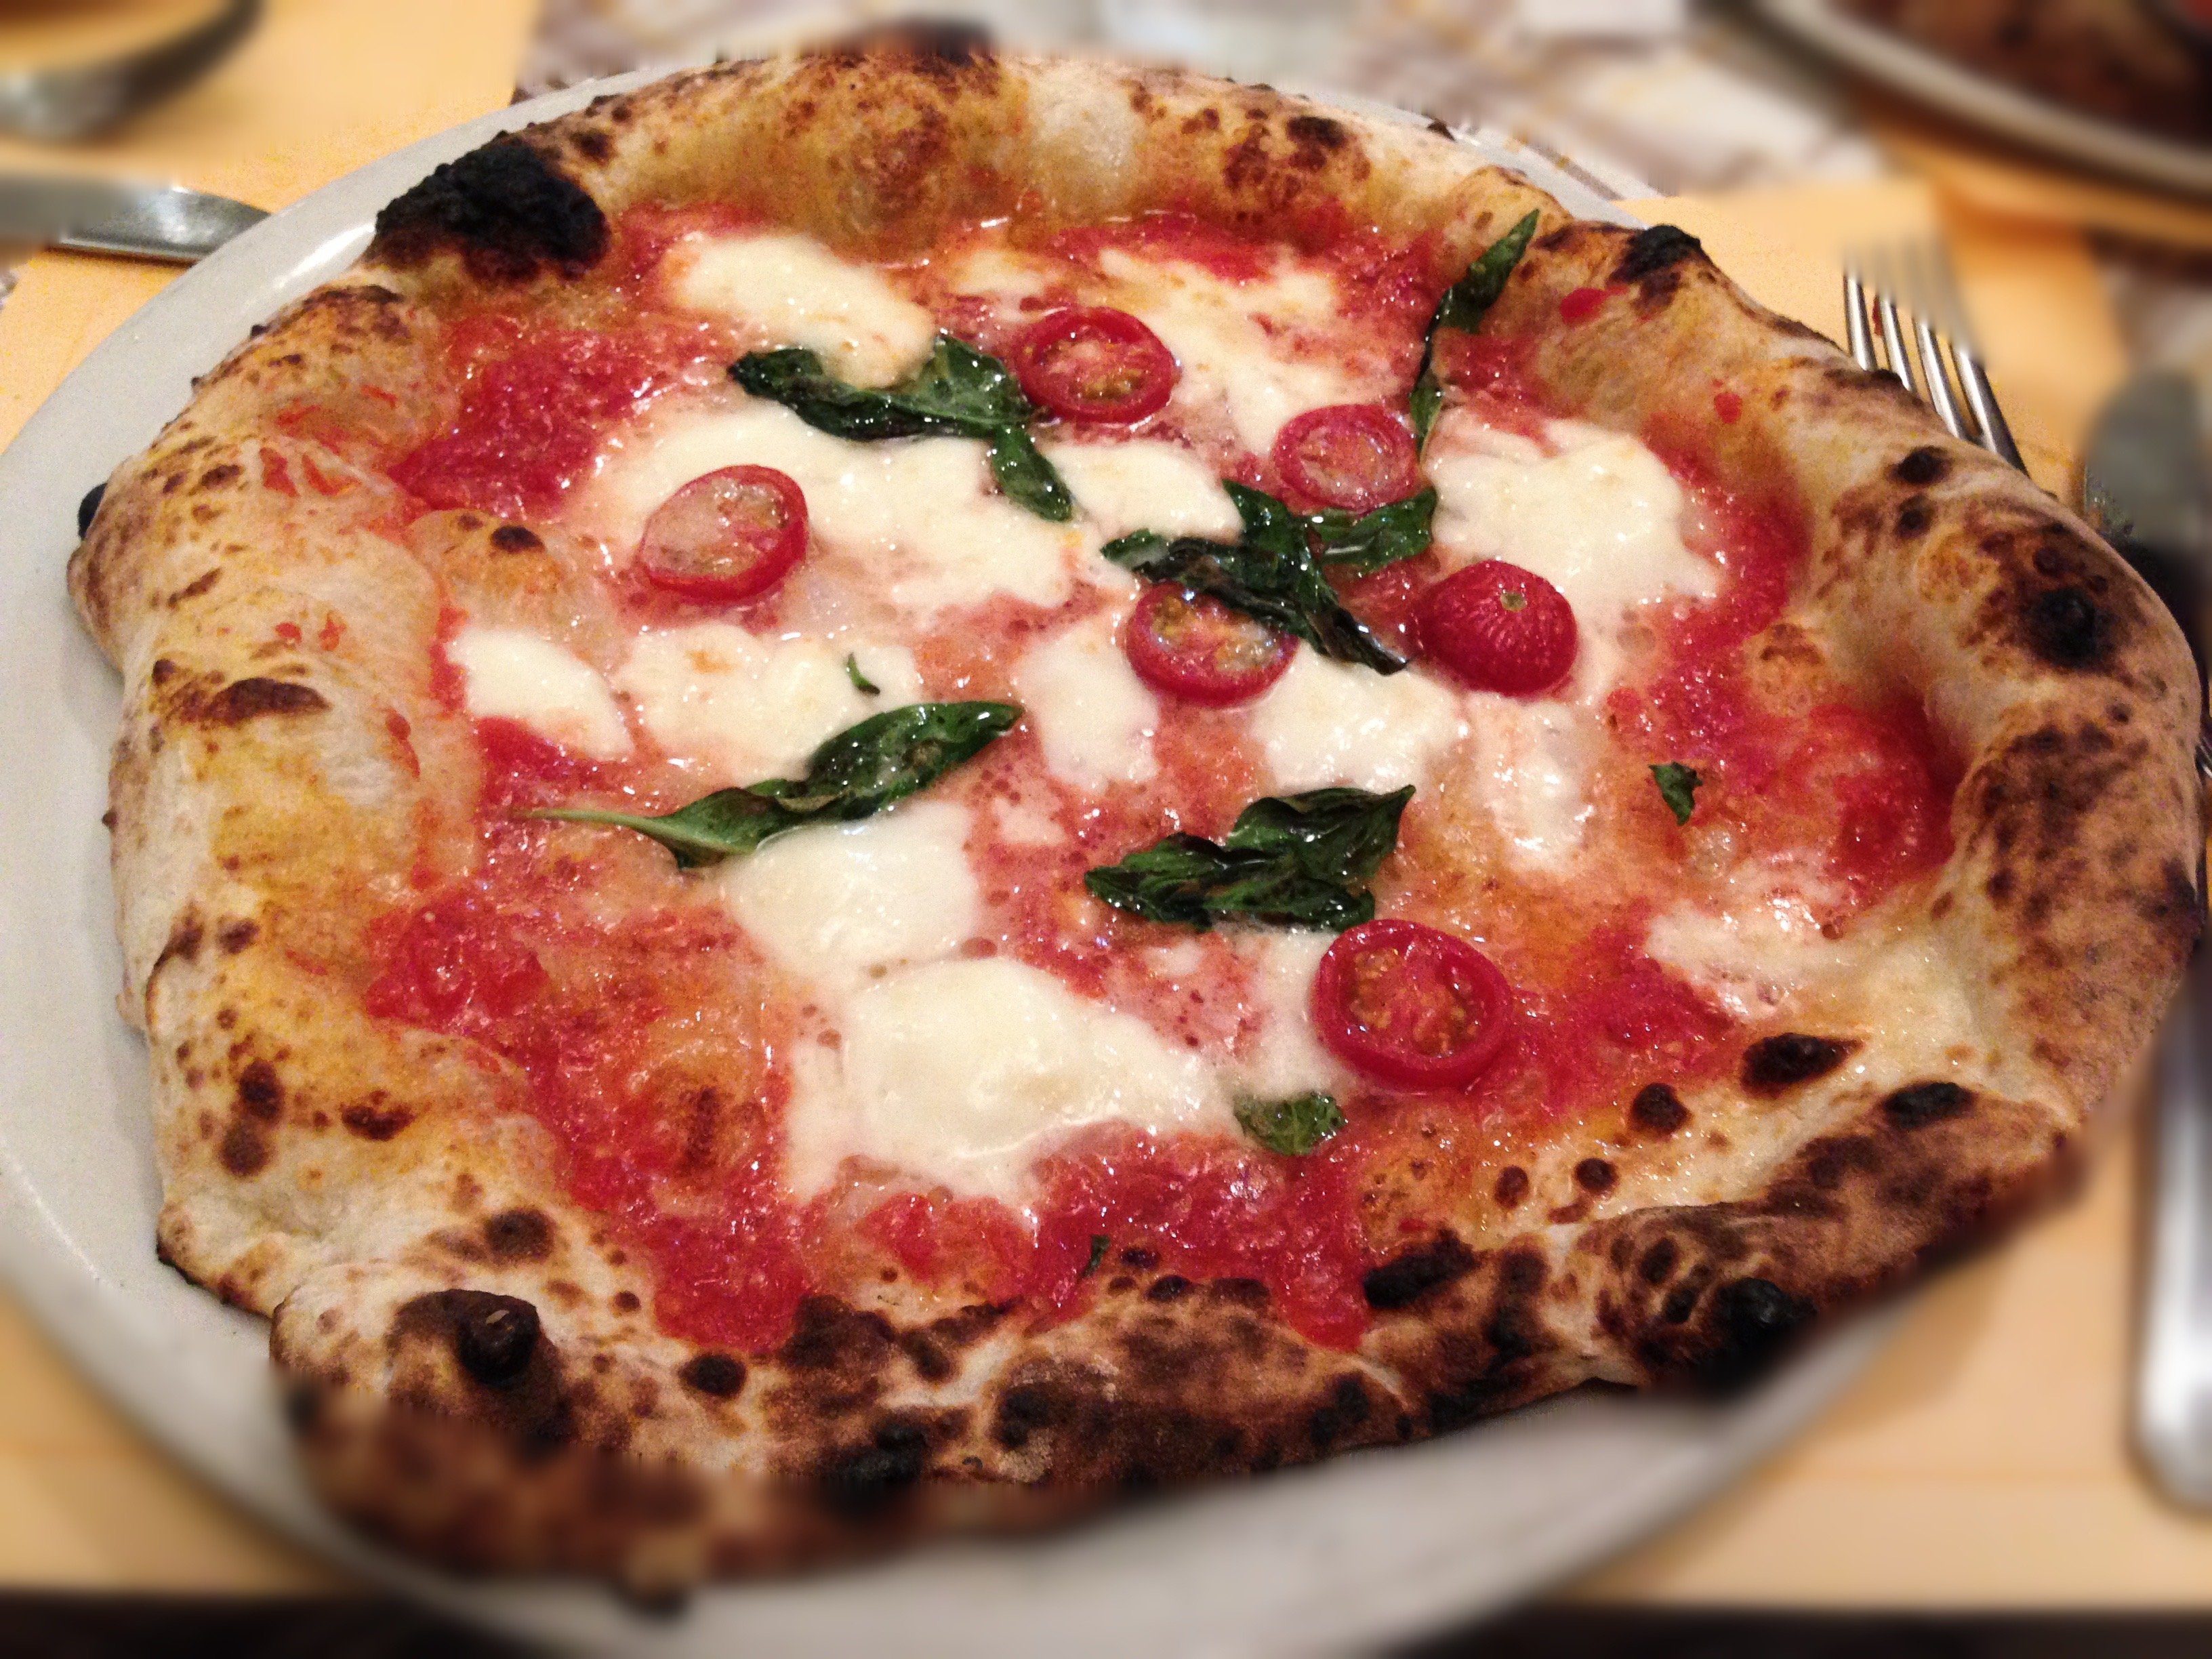 Виды итальянской пиццы с фото